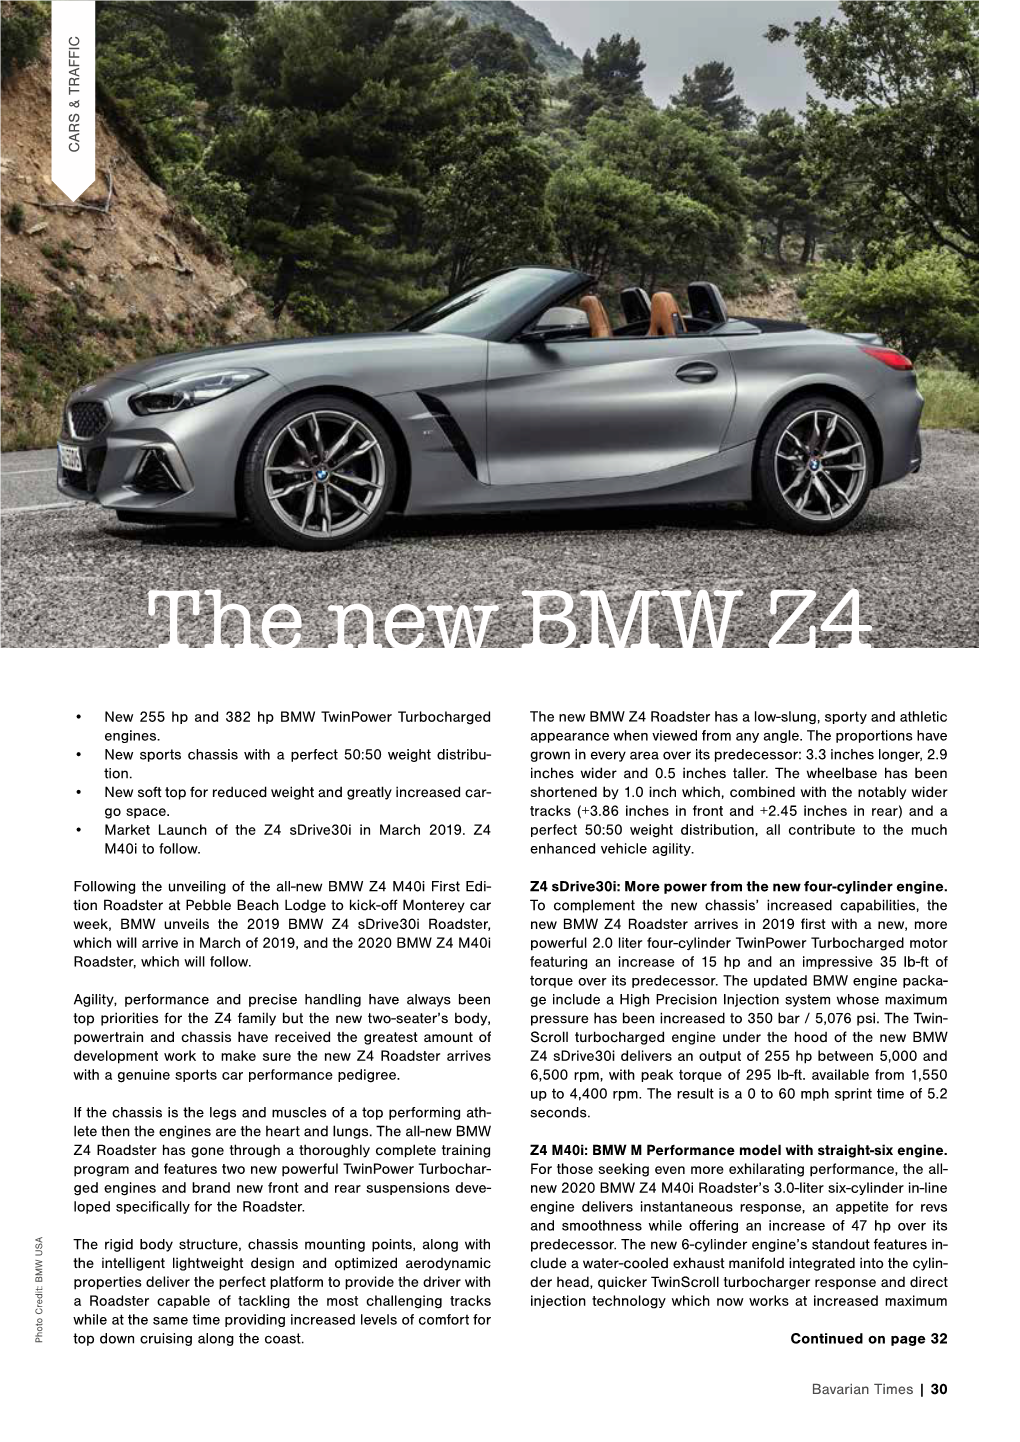 The New BMW Z4